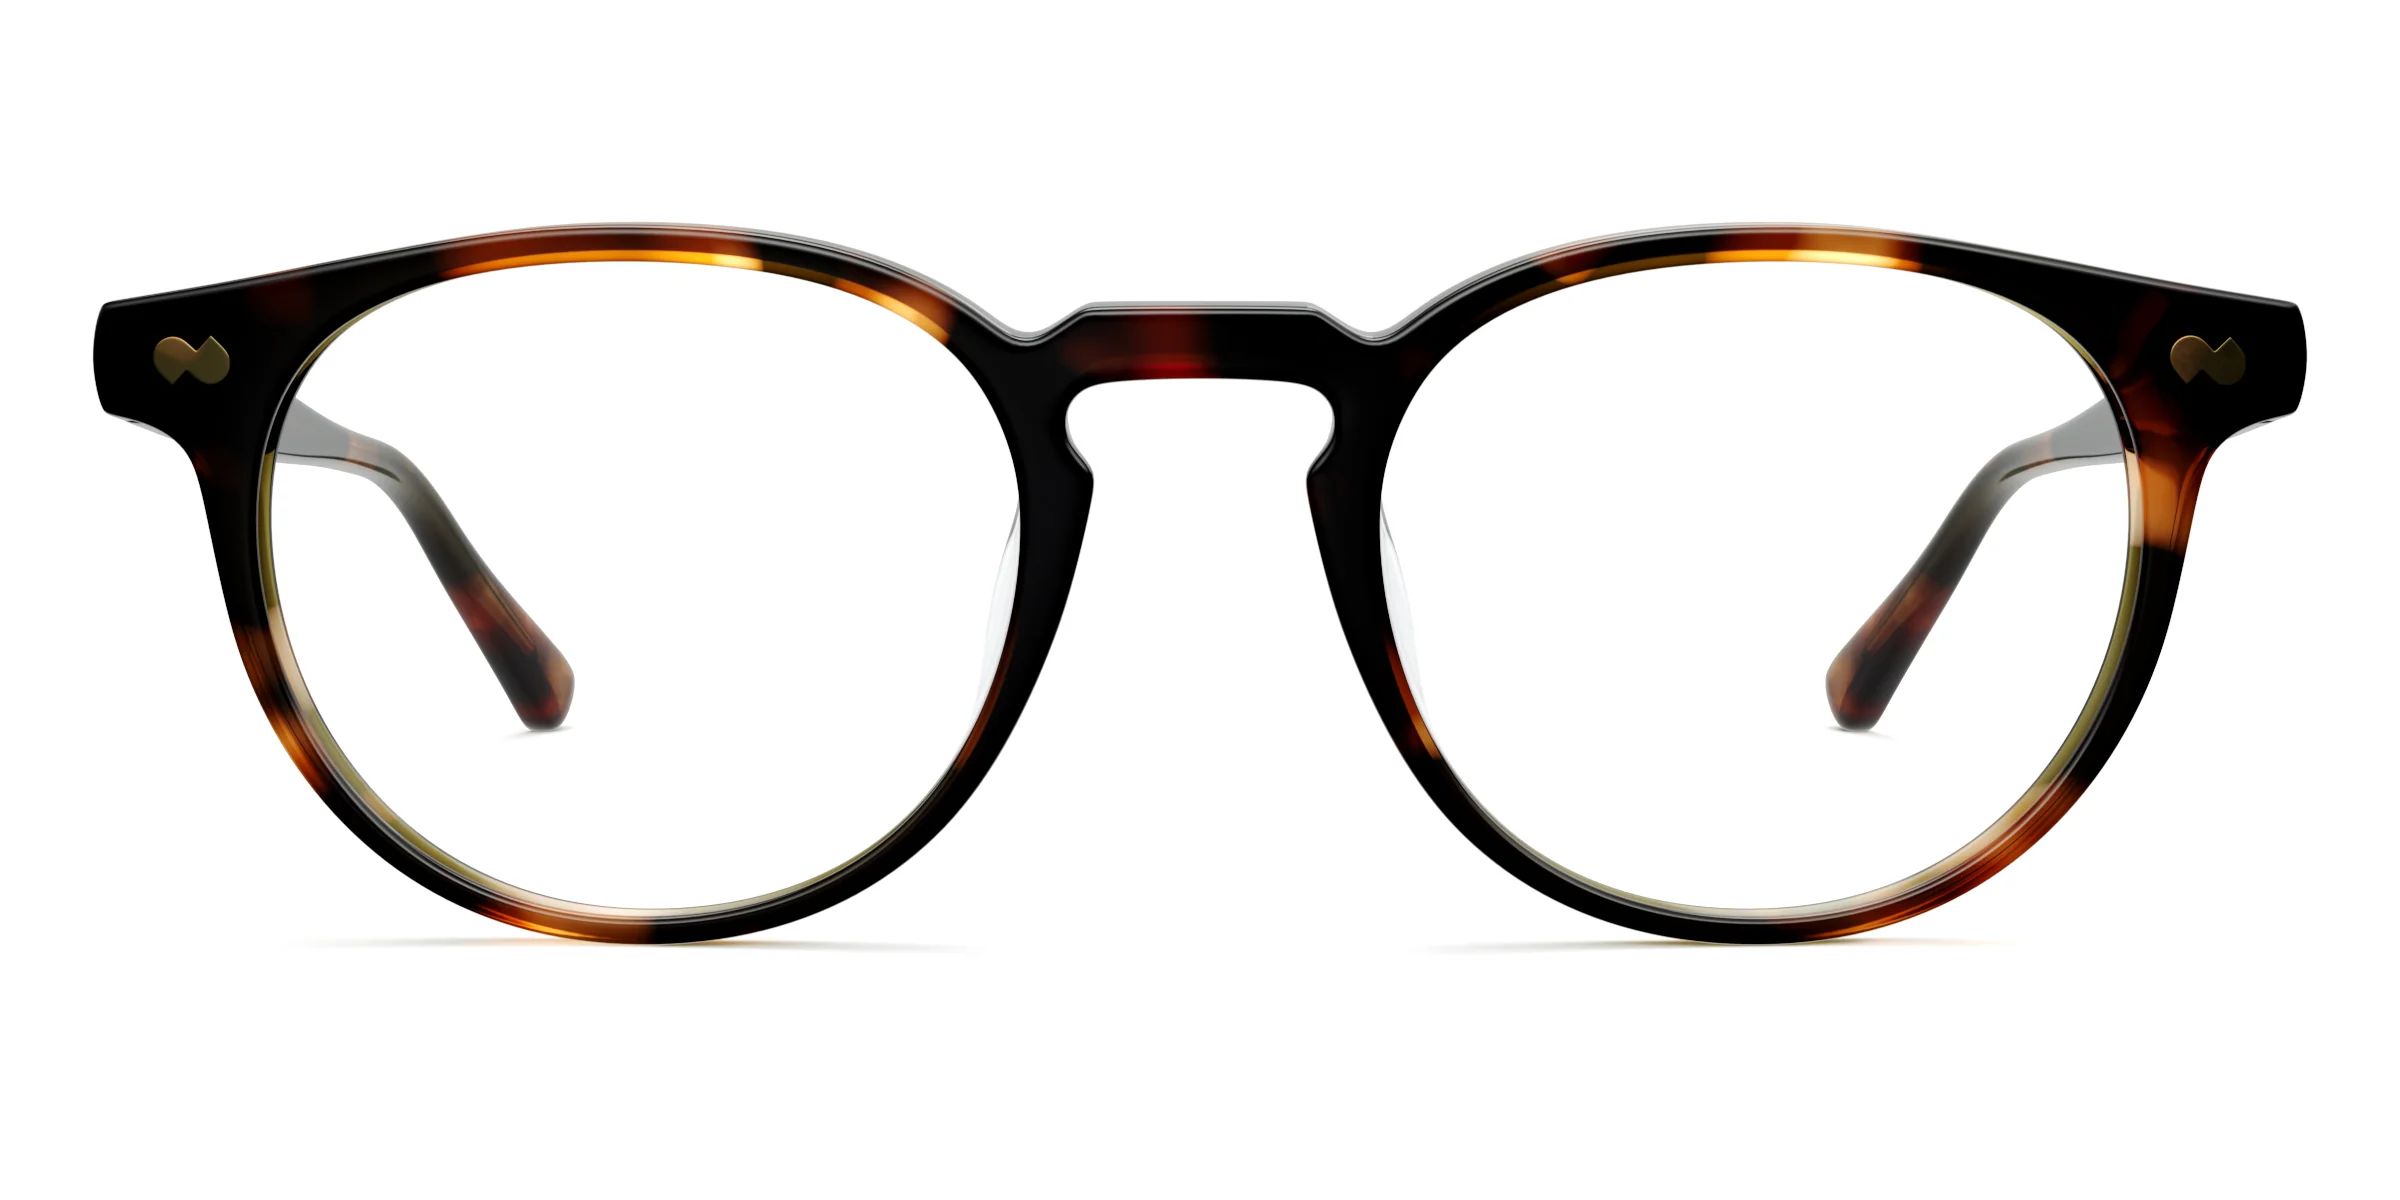 The Soto | Pair Eyewear